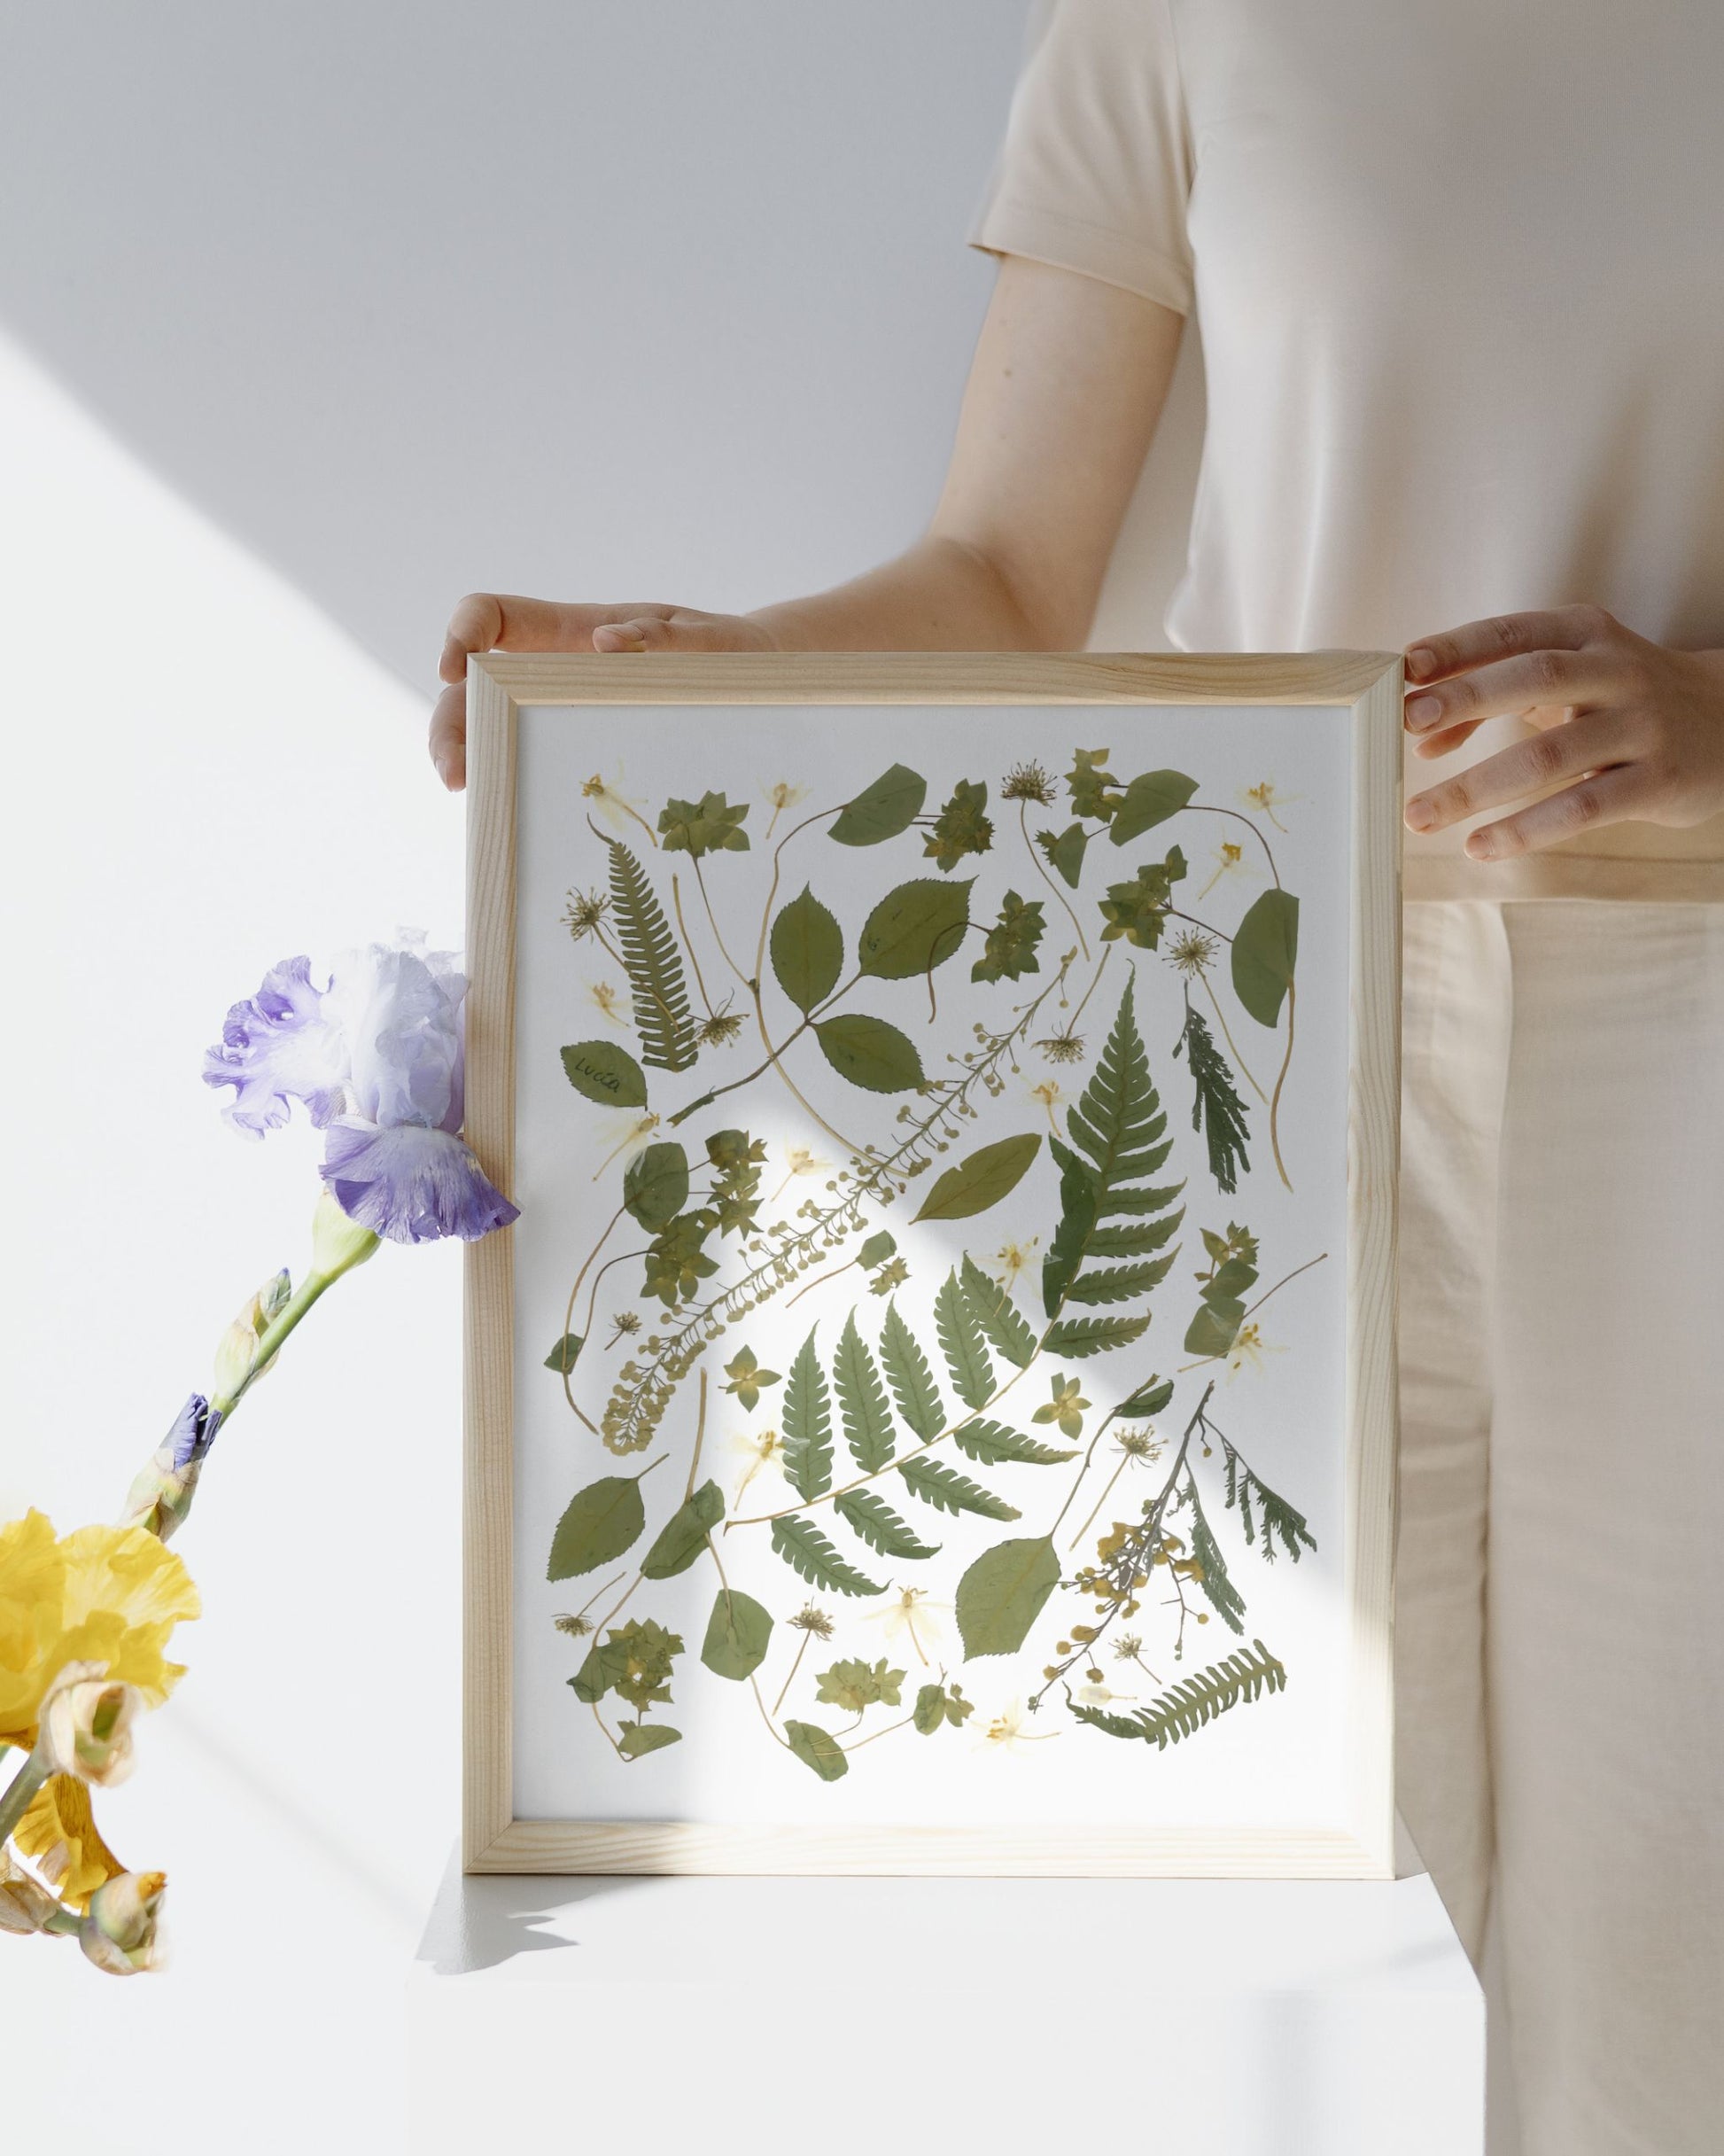 Print con marco de collage de flores colombianas prensadas autografiadas por la artista, con hojas verdes.